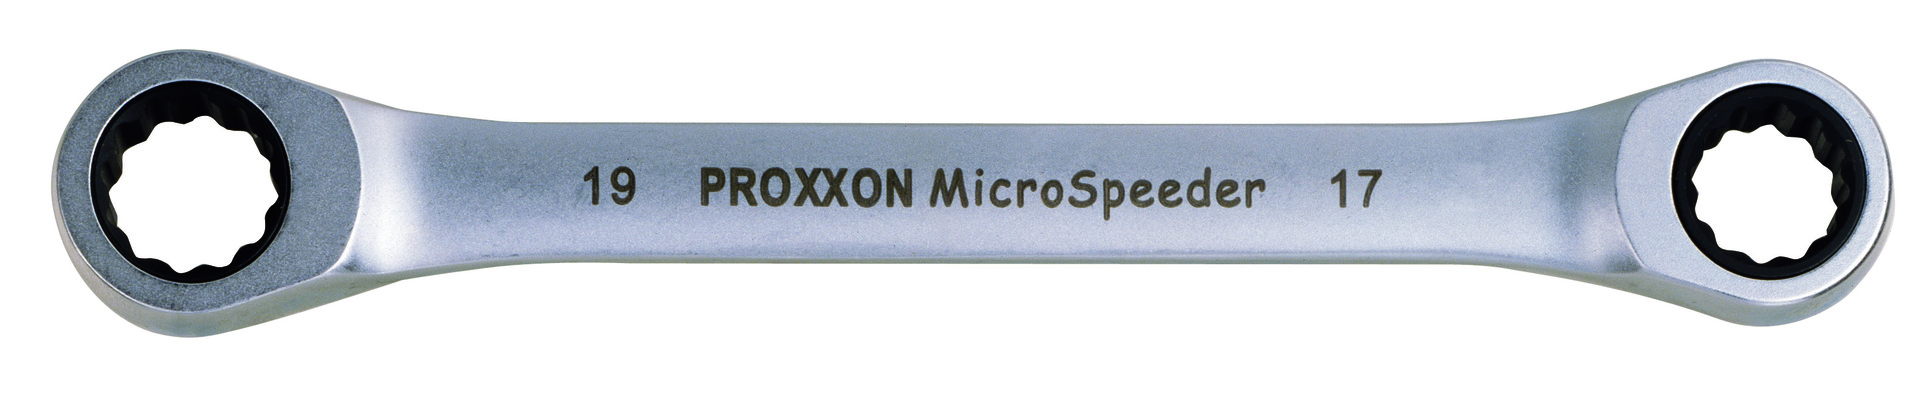 PROXXON GmbH MICRO-Speeder-Ratschenschlüssel